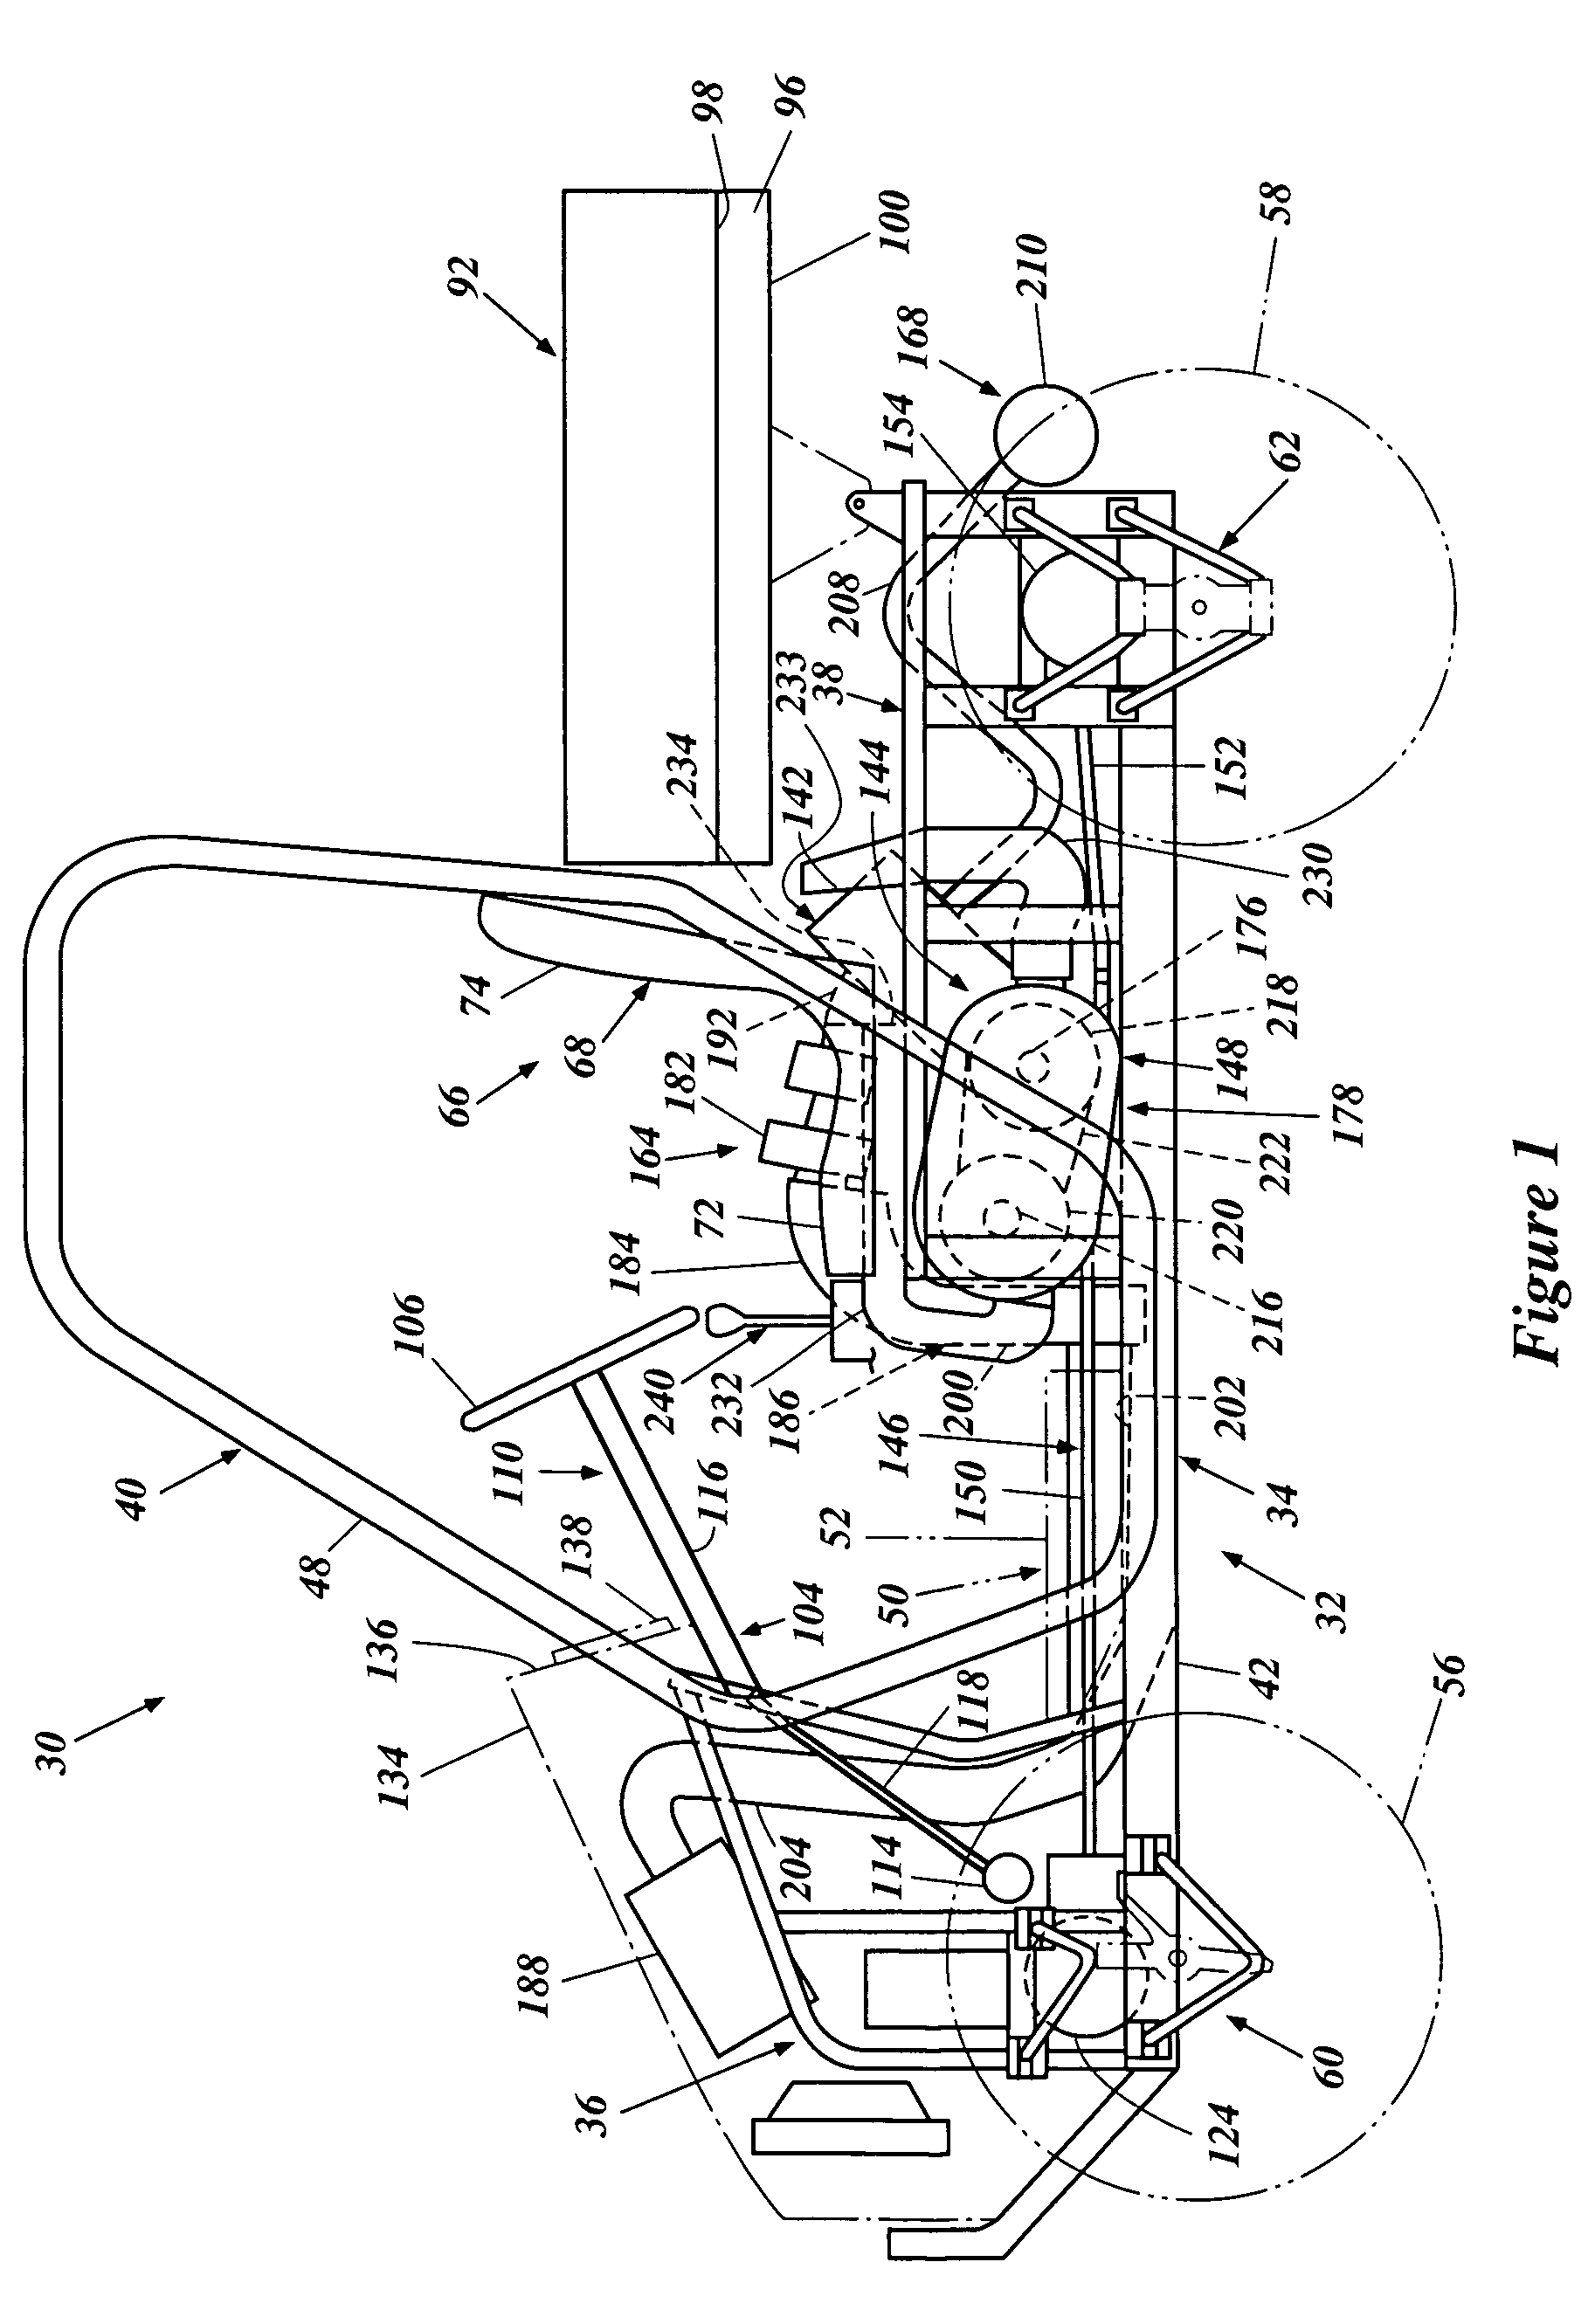 Floor arrangement for off-road vehicle